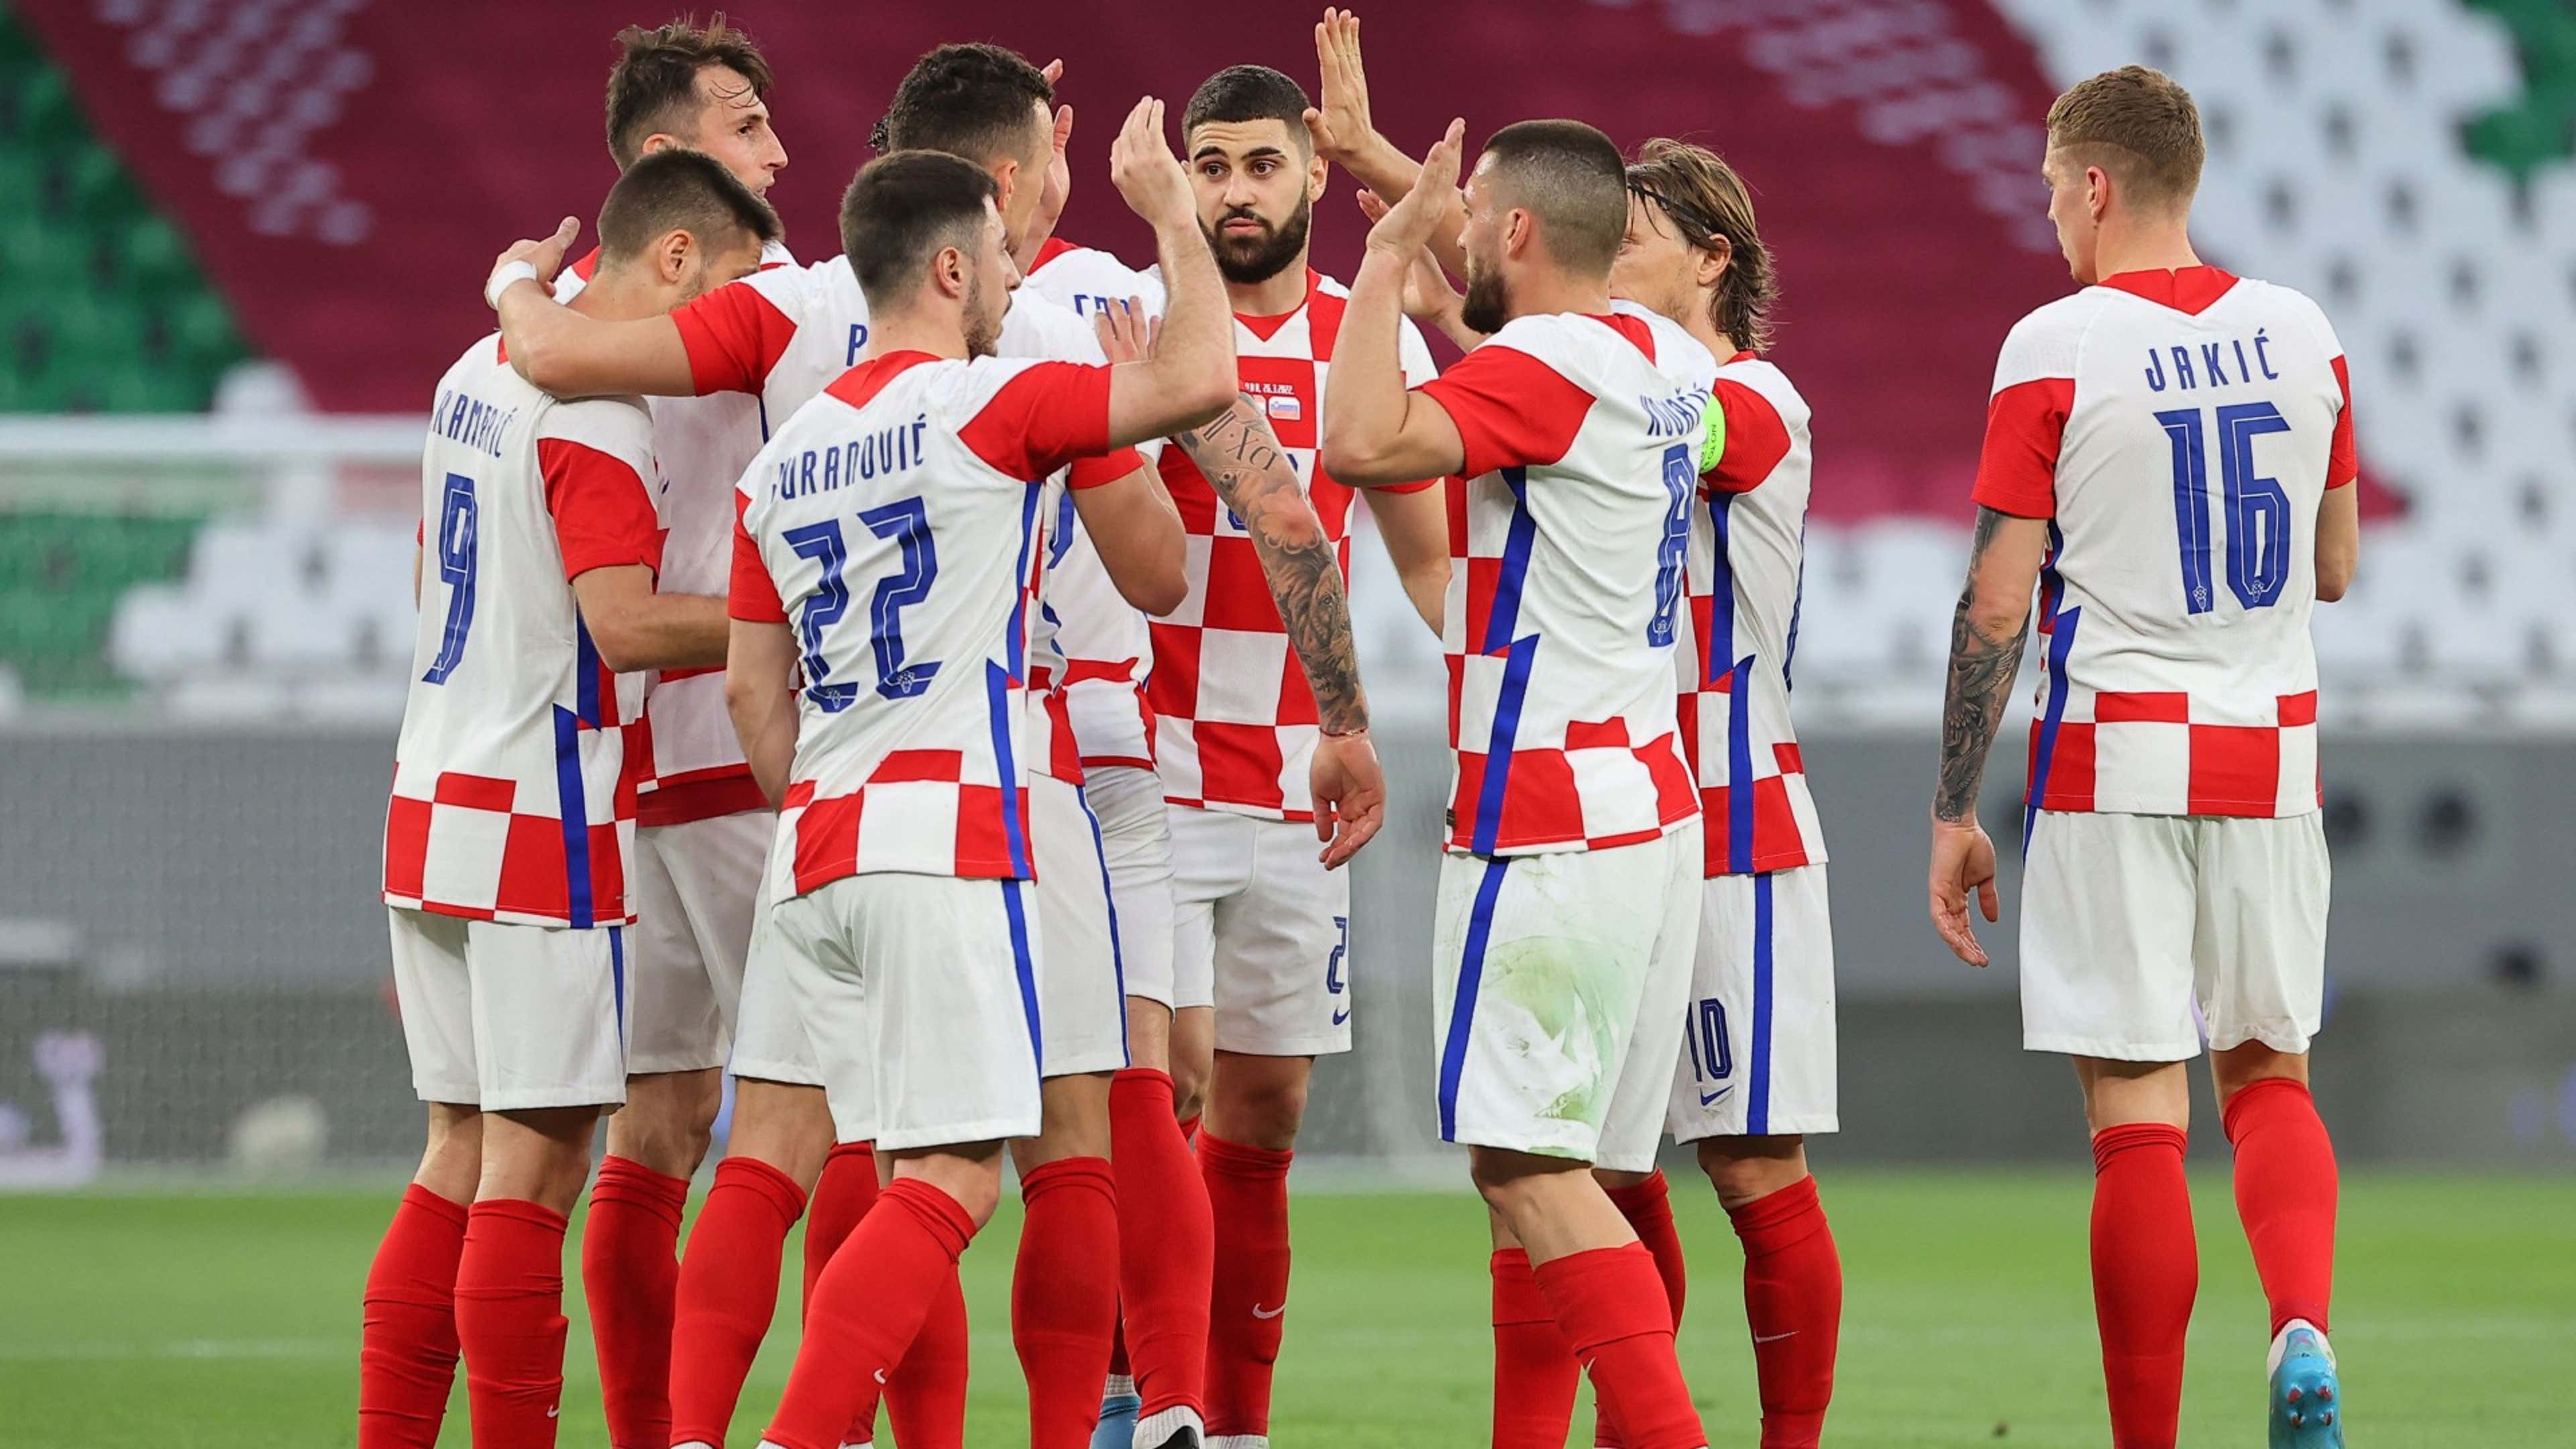 Saiba dia e horário do jogo entre Brasil e Croácia pelas quartas